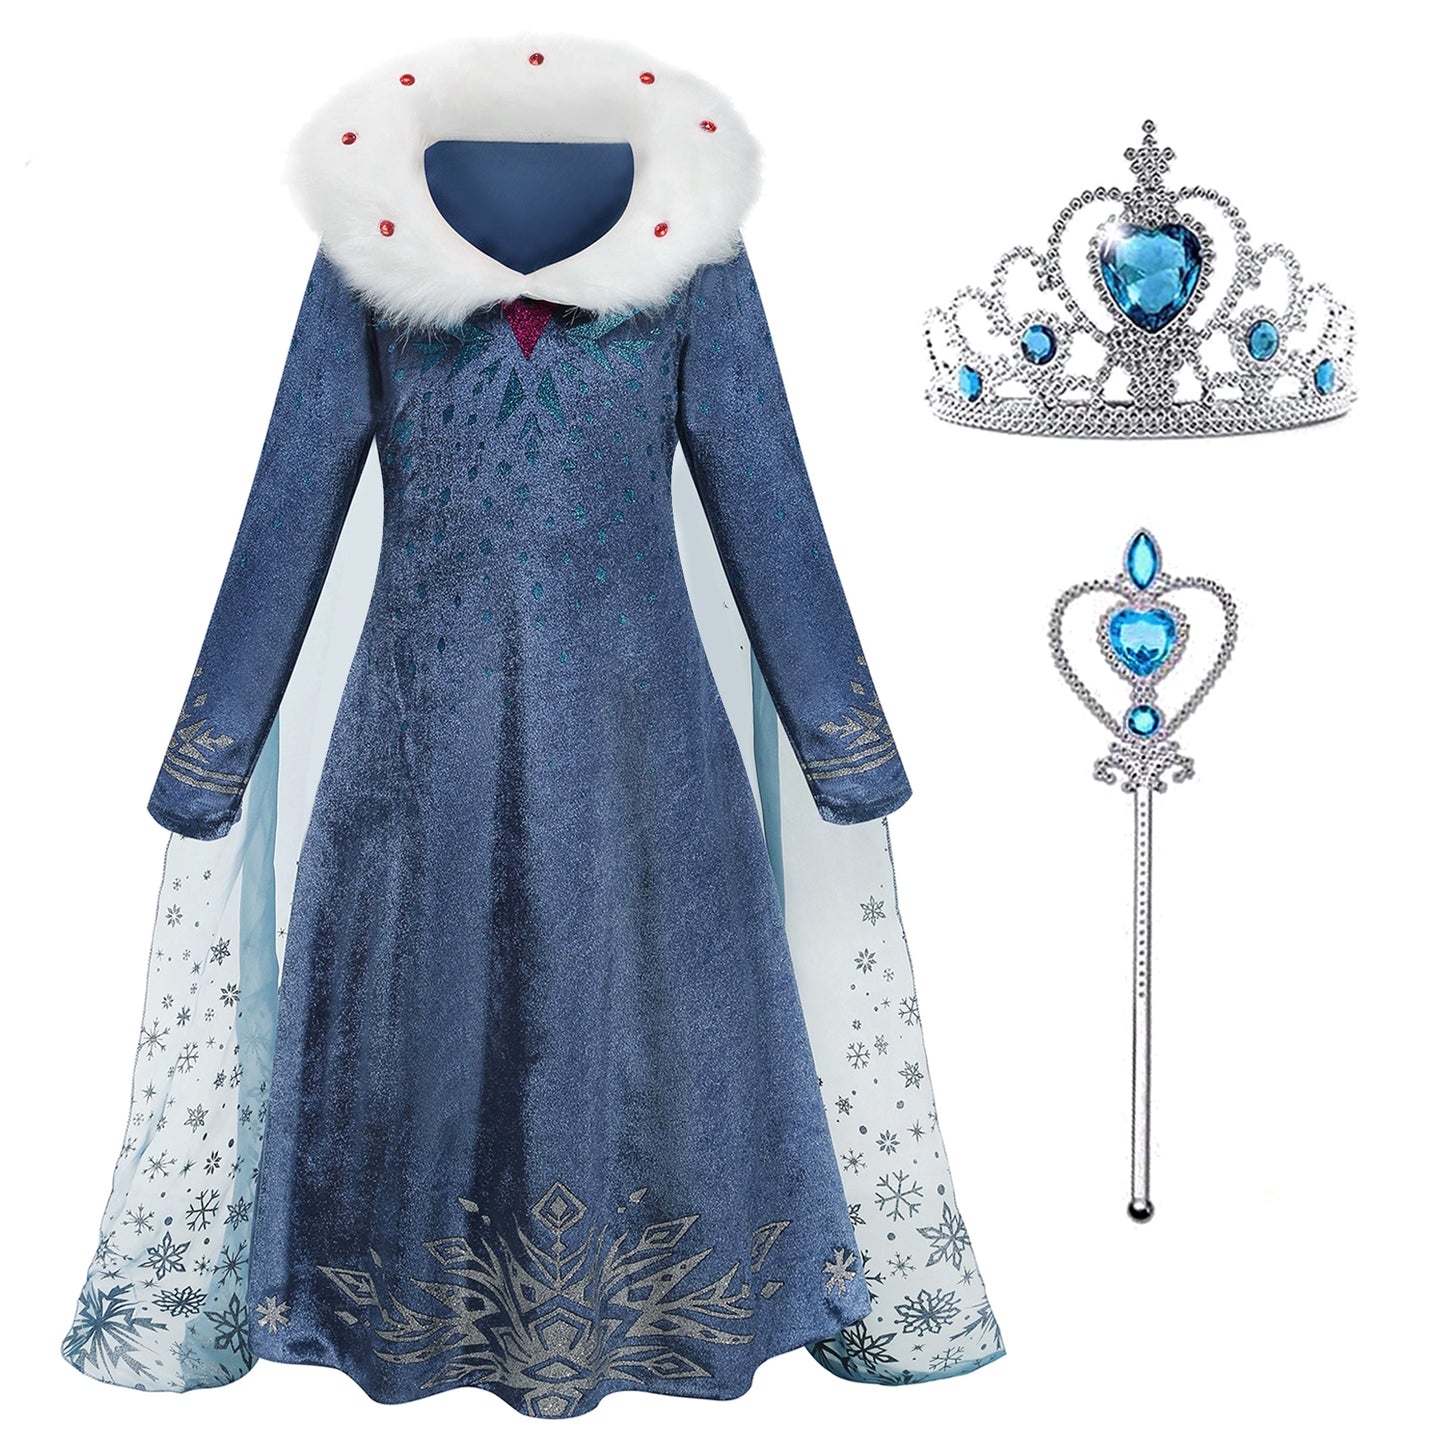 Foierp Costume Dress - Princess Dress Long Sleeves with Cloak Crown Wand Dark Blue